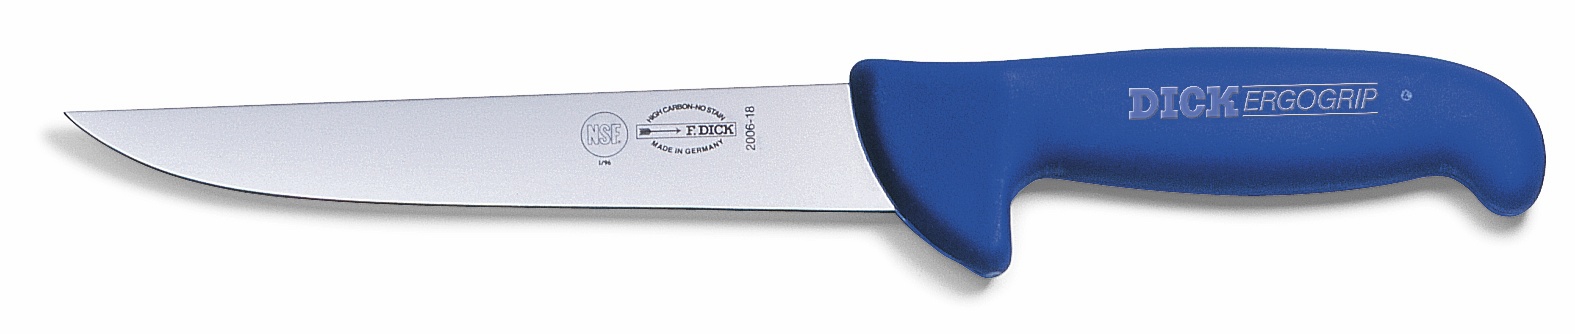 Vykrvovací nůž, modrý, v délce 18 cm